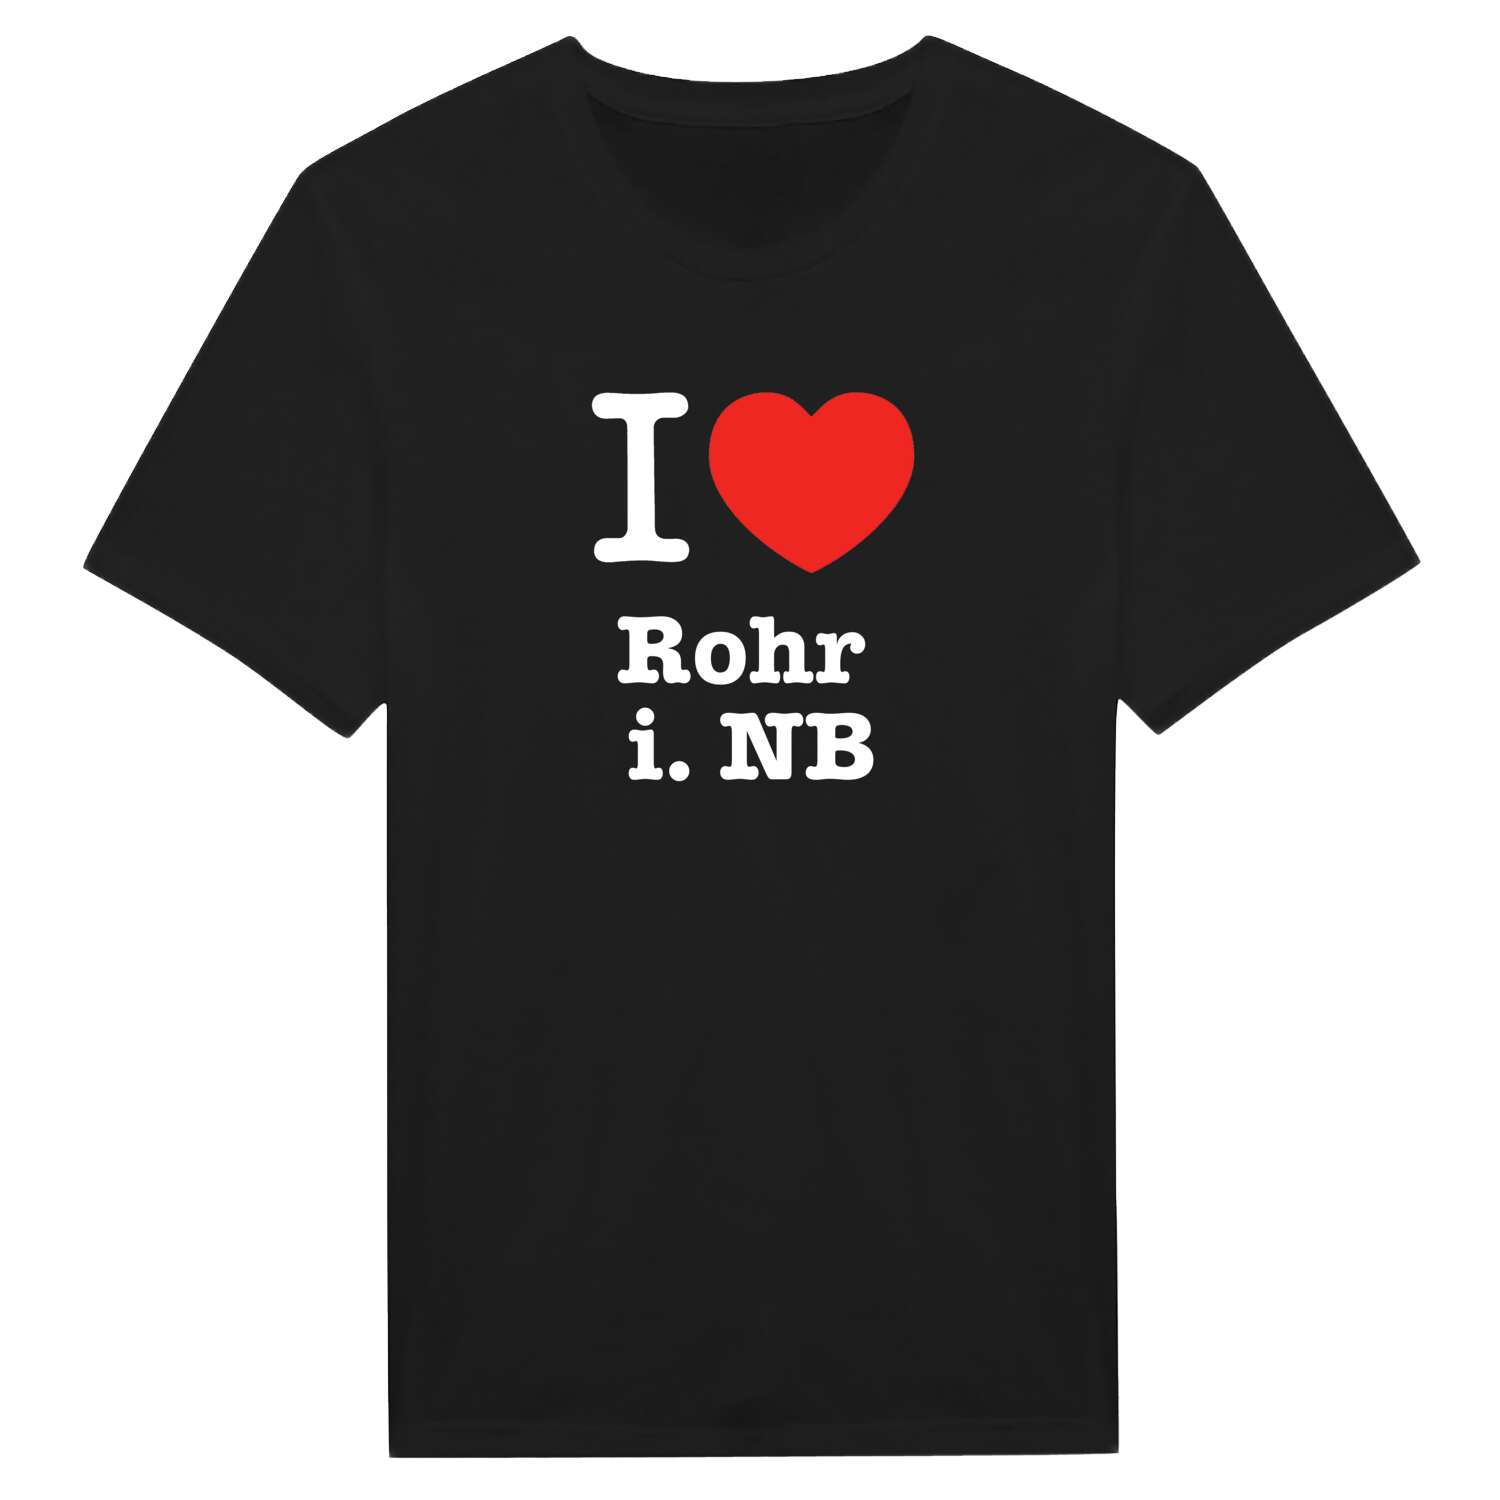 Rohr i. NB T-Shirt »I love«